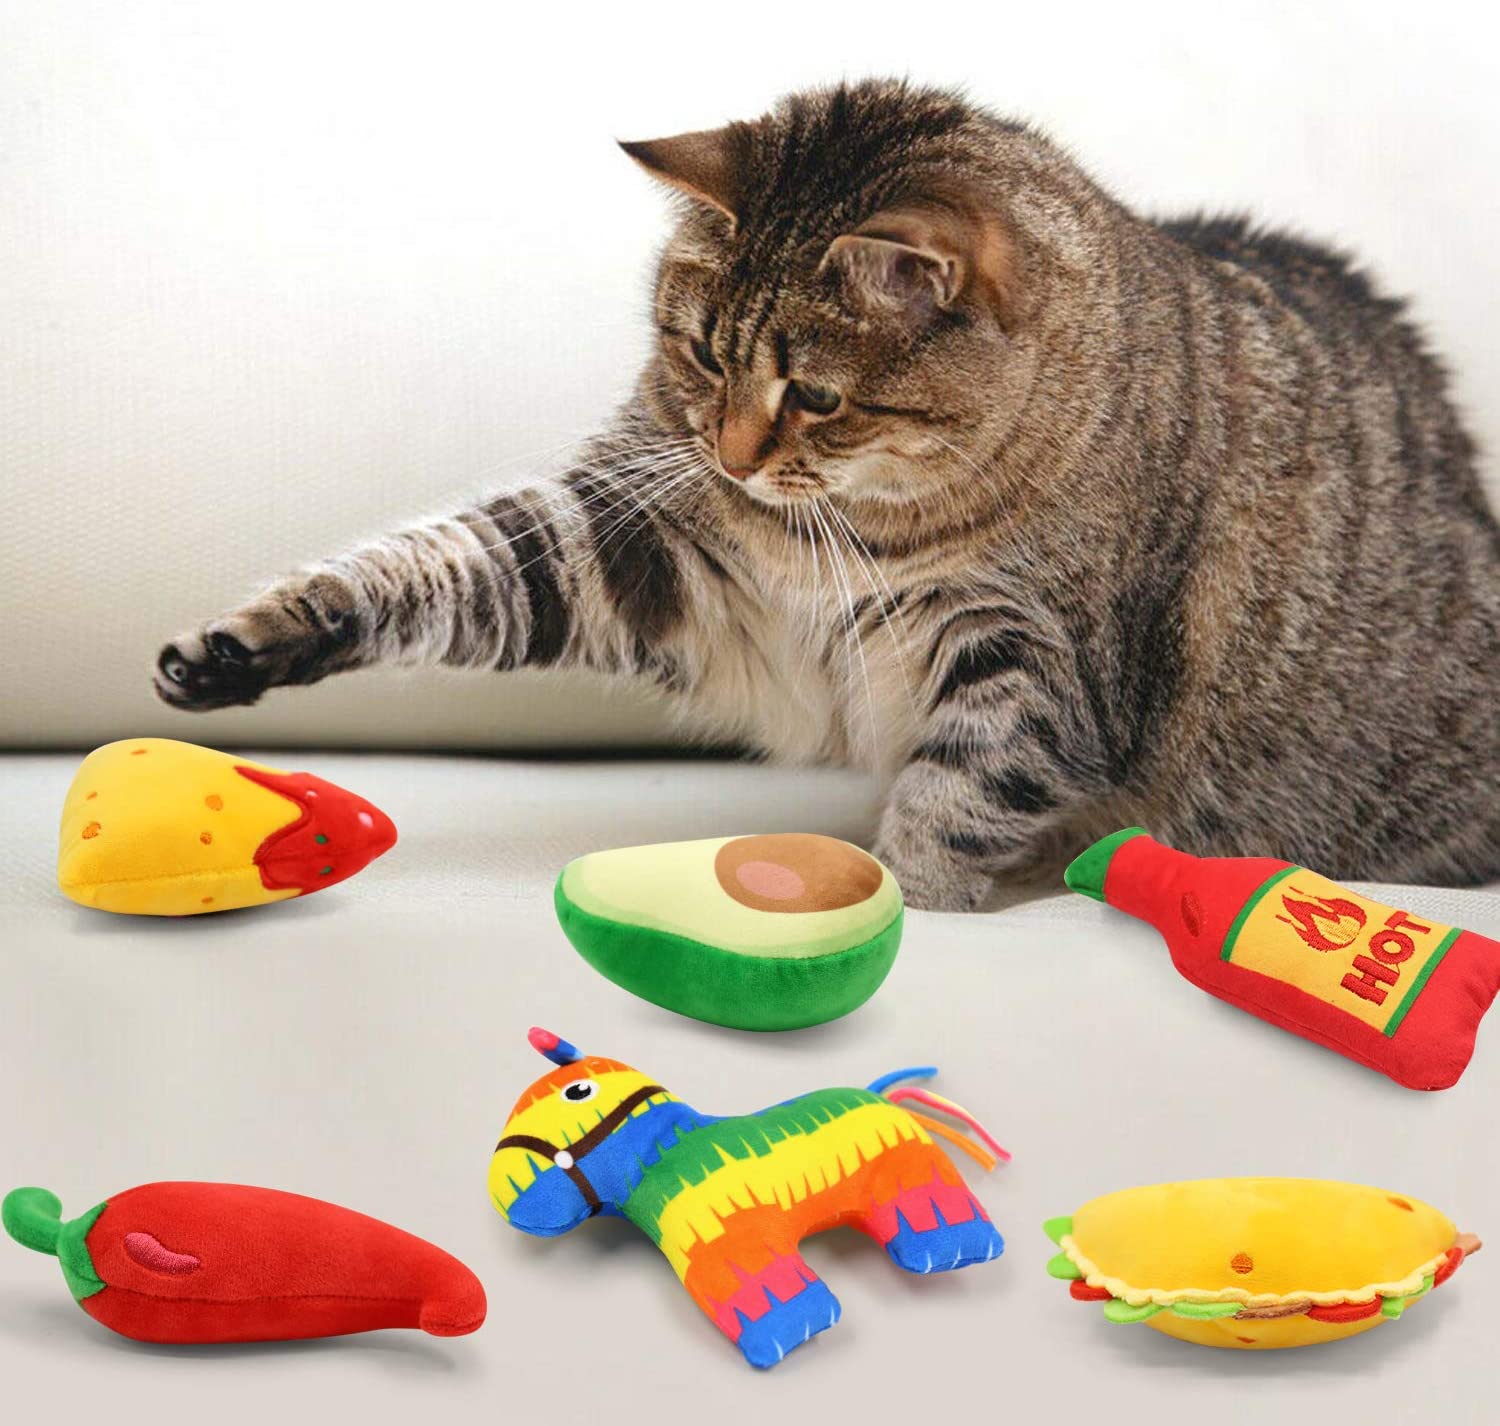 http://momhomedecor.com/cdn/shop/products/6-Pack-Avocato-Taco-Chili-Nacho-Catnip-Toys-for-Cats-momhomedecor-1179.jpg?v=1694066327